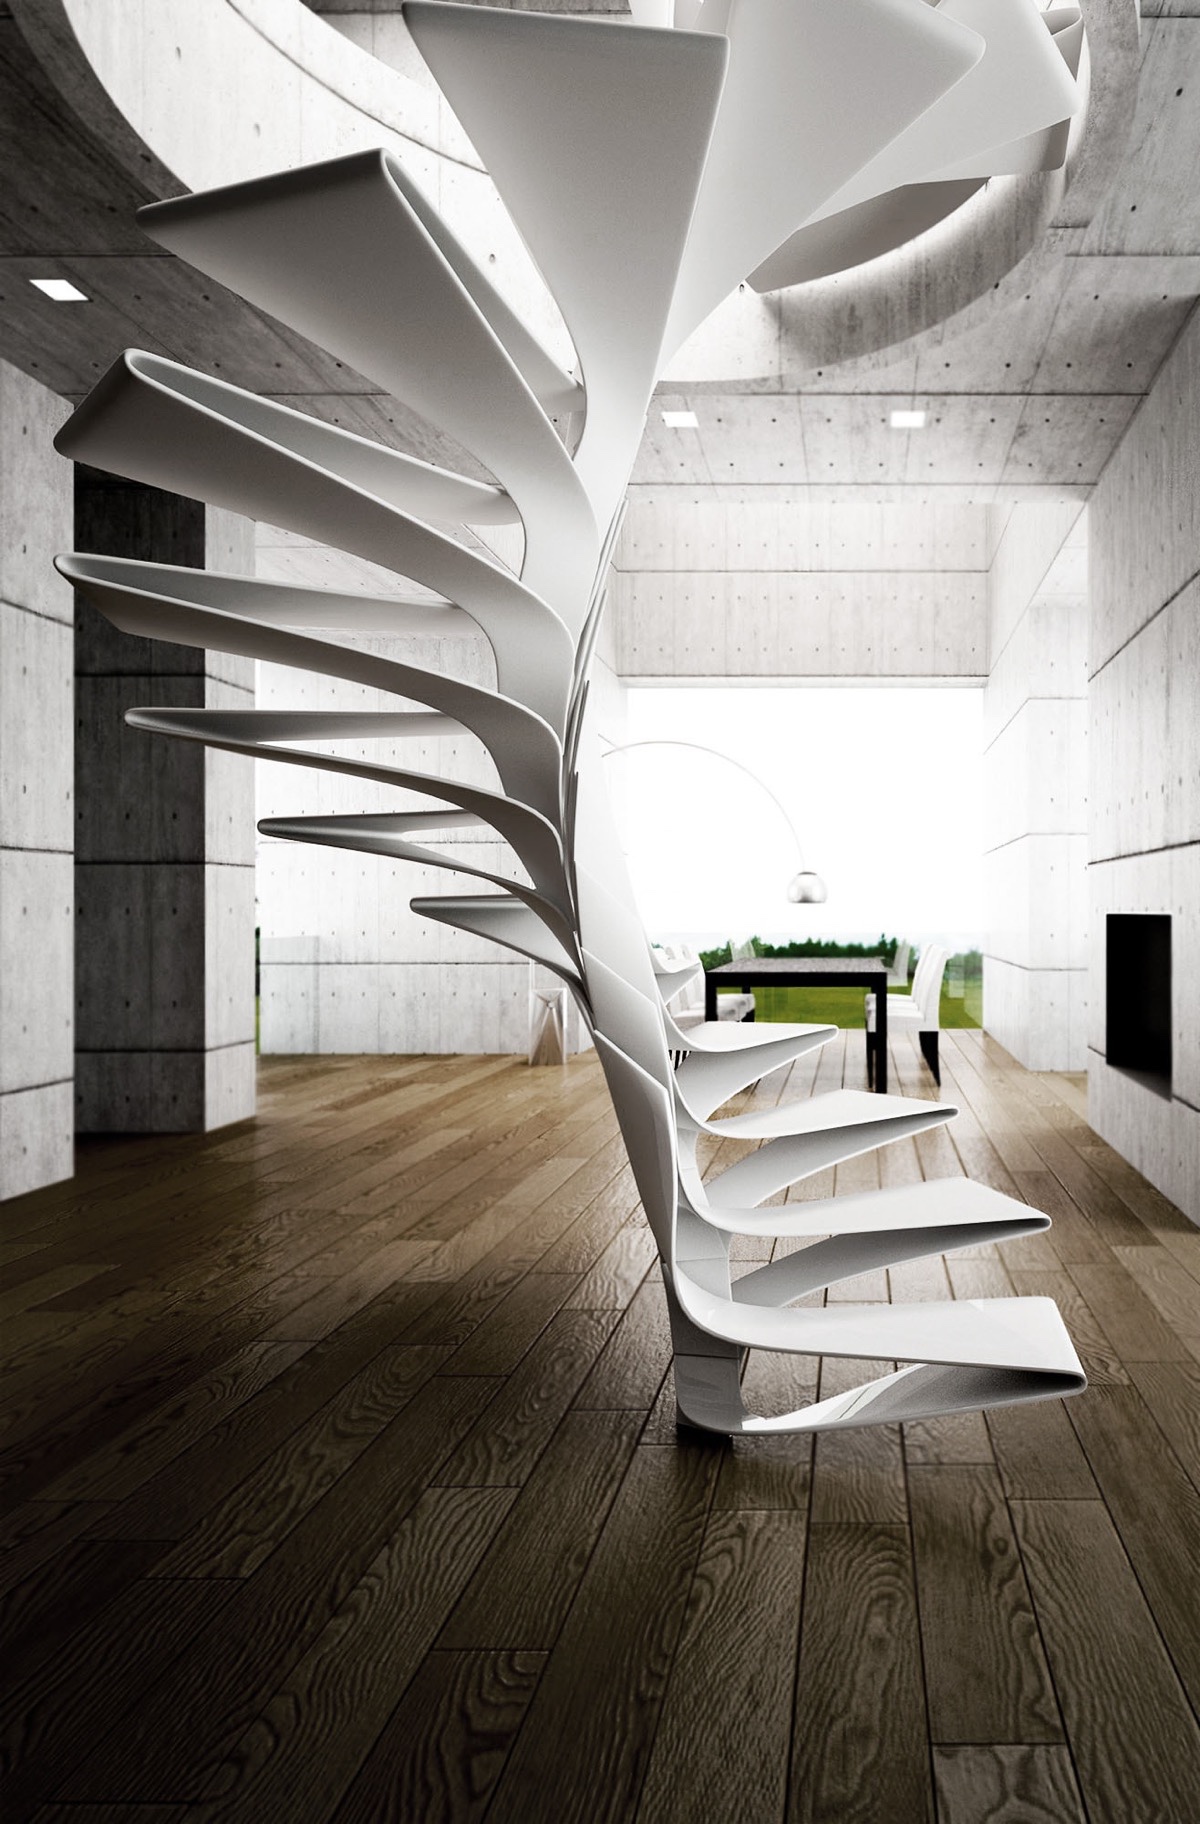 Cầu thang làm bằng kim loại màu trắng, kiểu dáng ấn tượng, mang lại tầm nhìn toàn cảnh.